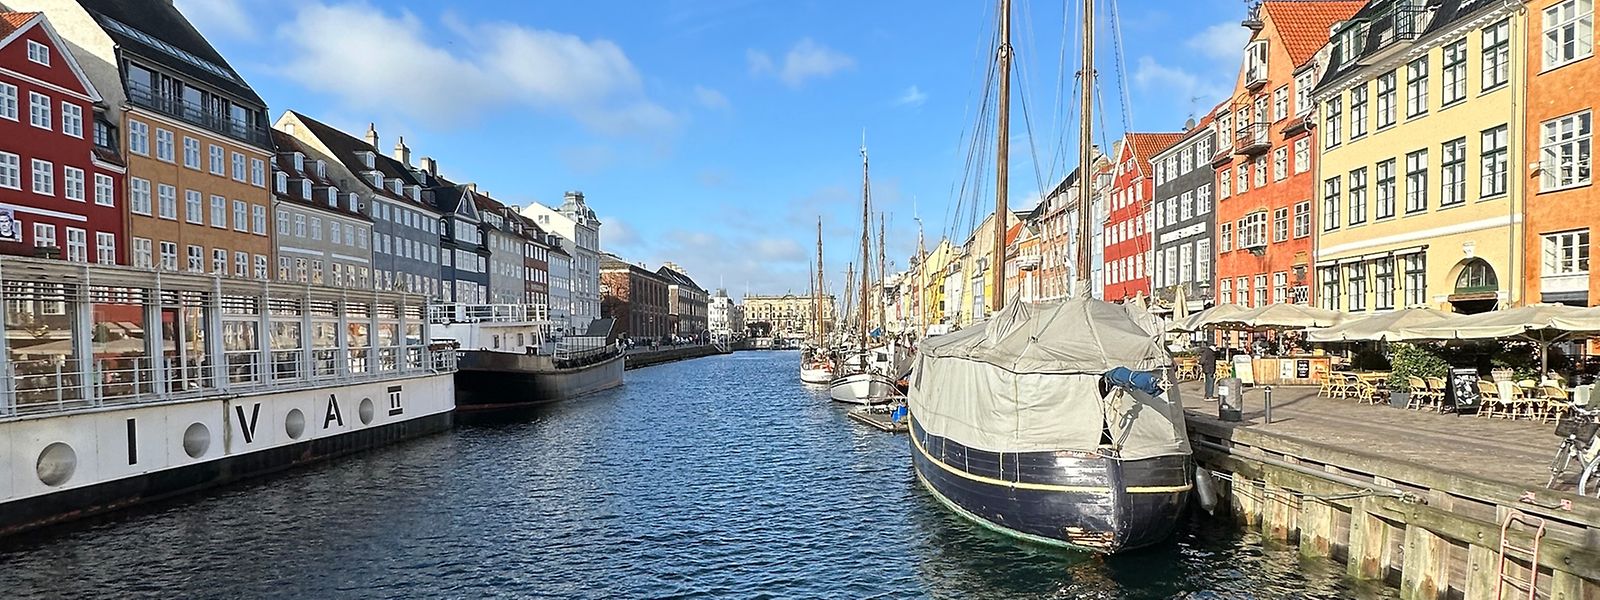 Die Stille der dänischen Hauptstadt verwundert. Das Geheimnis liegt in der Lebensphilosophie der Einwohner. 